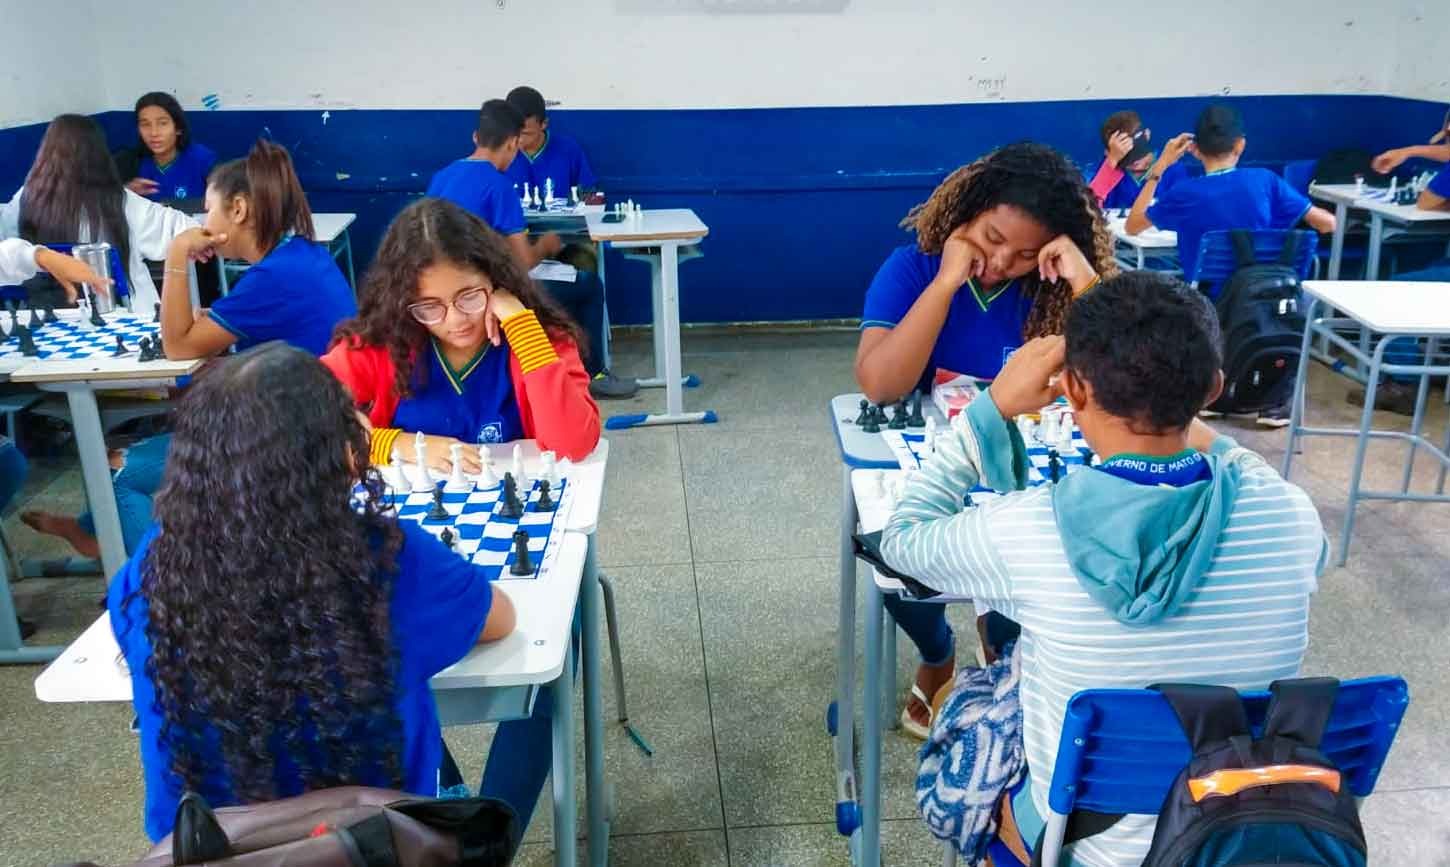 XEQUE MATE: Cresce a prática do xadrez em Macaé, Notícias